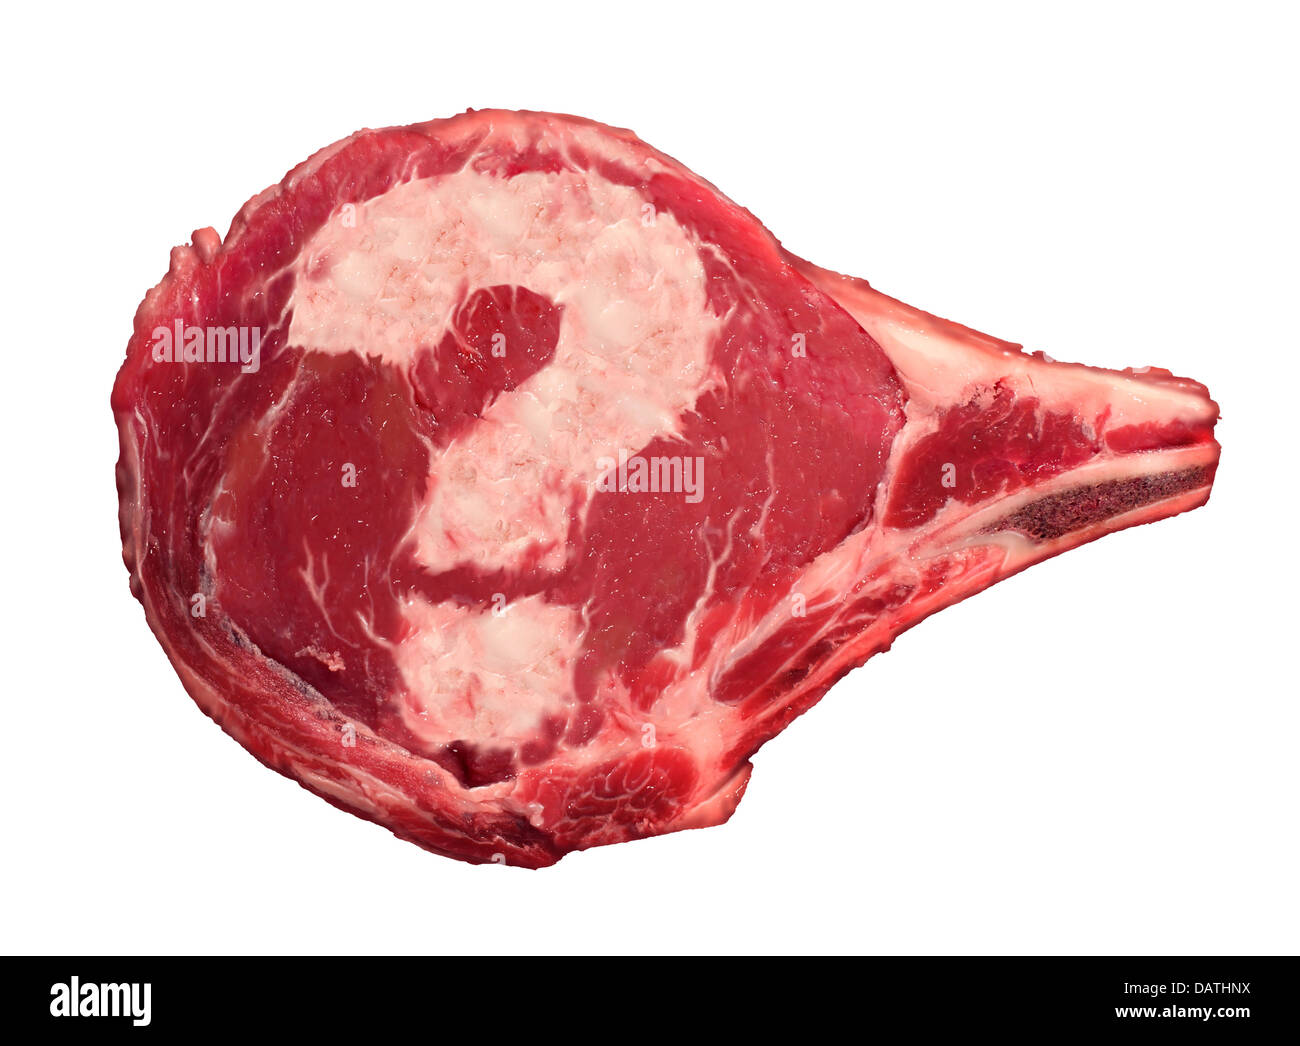 Fleisch-Fragen Essenskonzept als rohes Rindfleisch Steak mit einem Fragezeichen geformt aus dem Marbelised Fett, darstellt die Verwirrung der Verbraucher in Bezug auf die Sicherheit der Lebensmittel wir vom Metzger mit nach Hause nehmen. Stockfoto